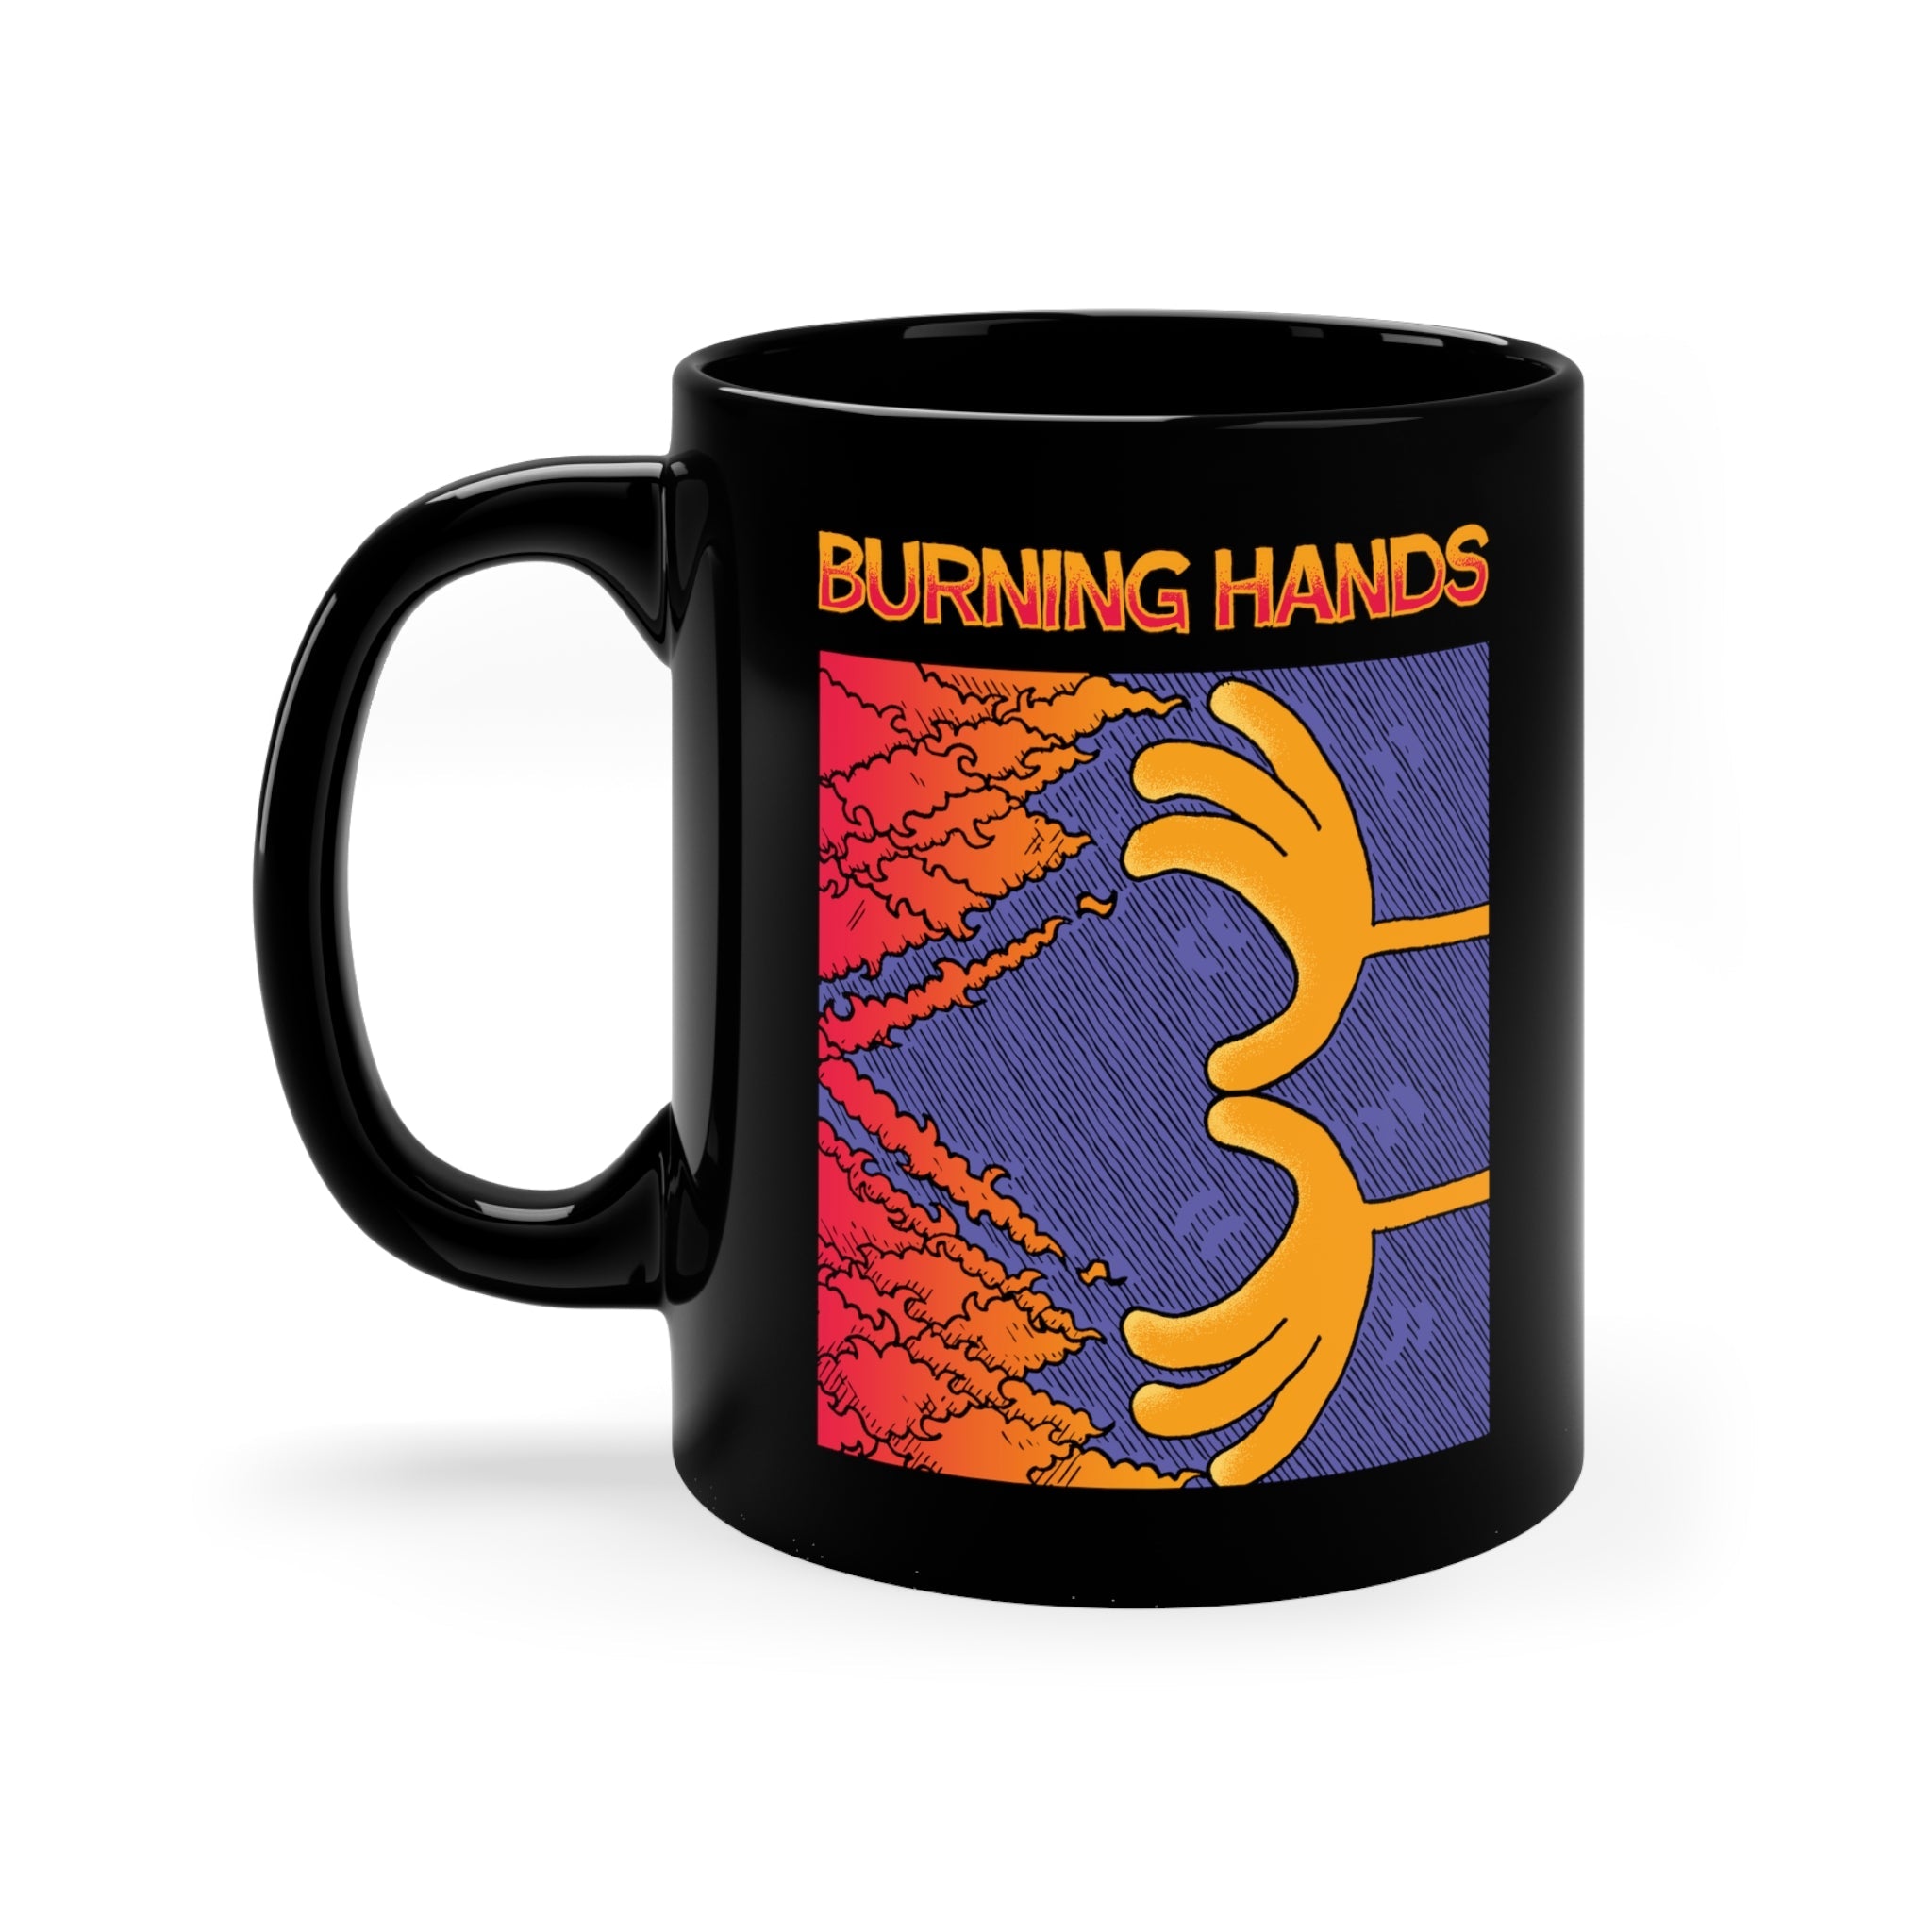 Burning Hands | Black Mug 11oz - Mug - Ace of Gnomes - 59901002362436170756